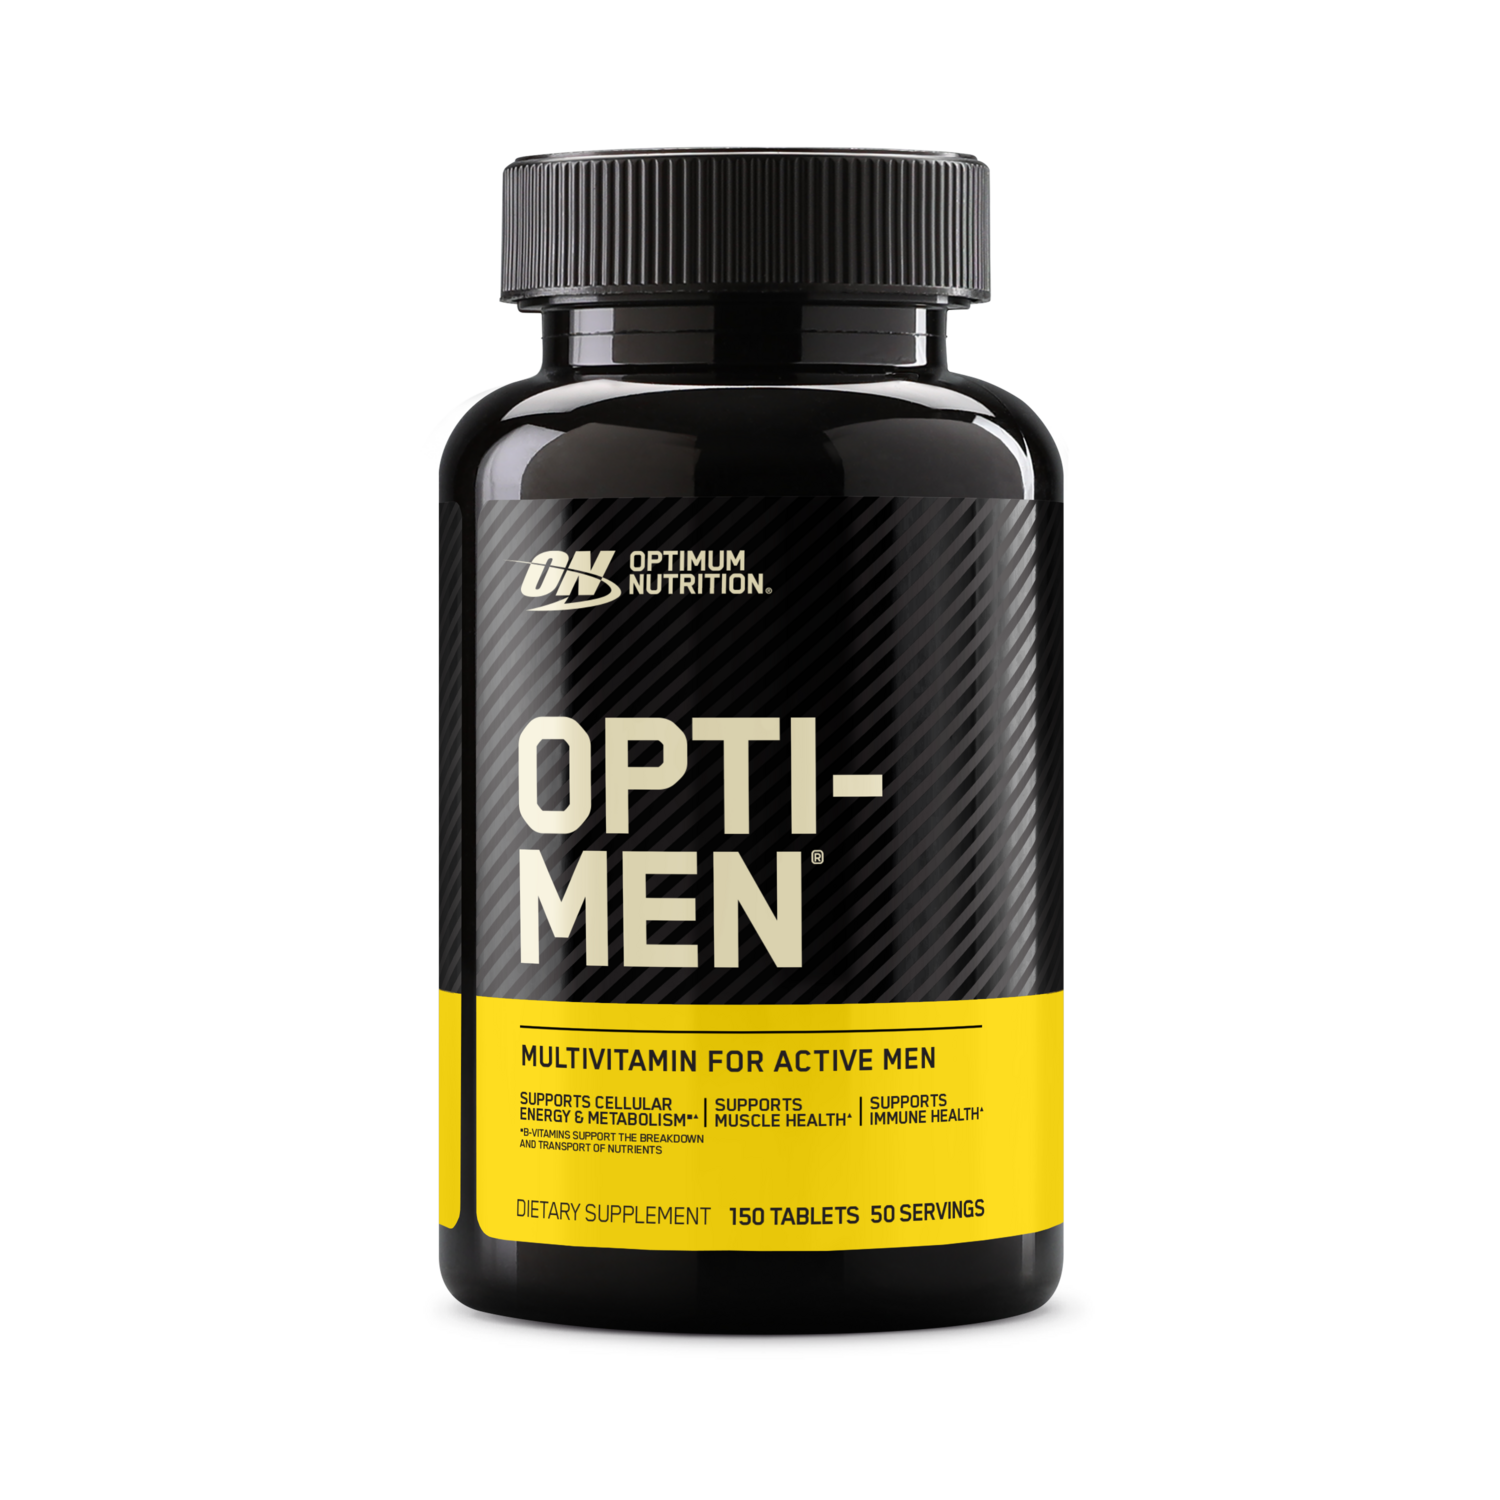 OPTI-MEN | Optimum Nutrition US